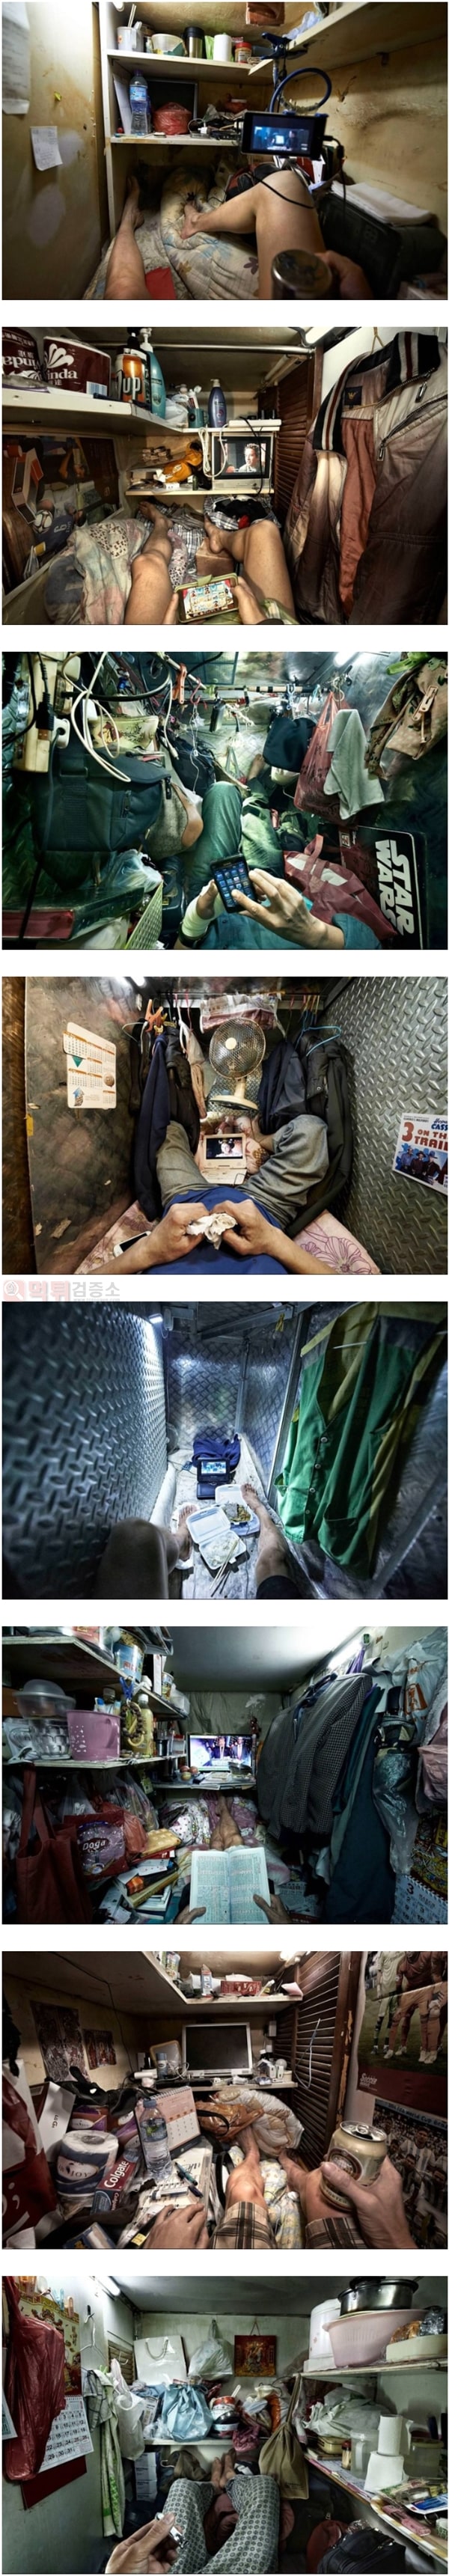 먹튀검증소 유머 홍콩의 아파트의 삶